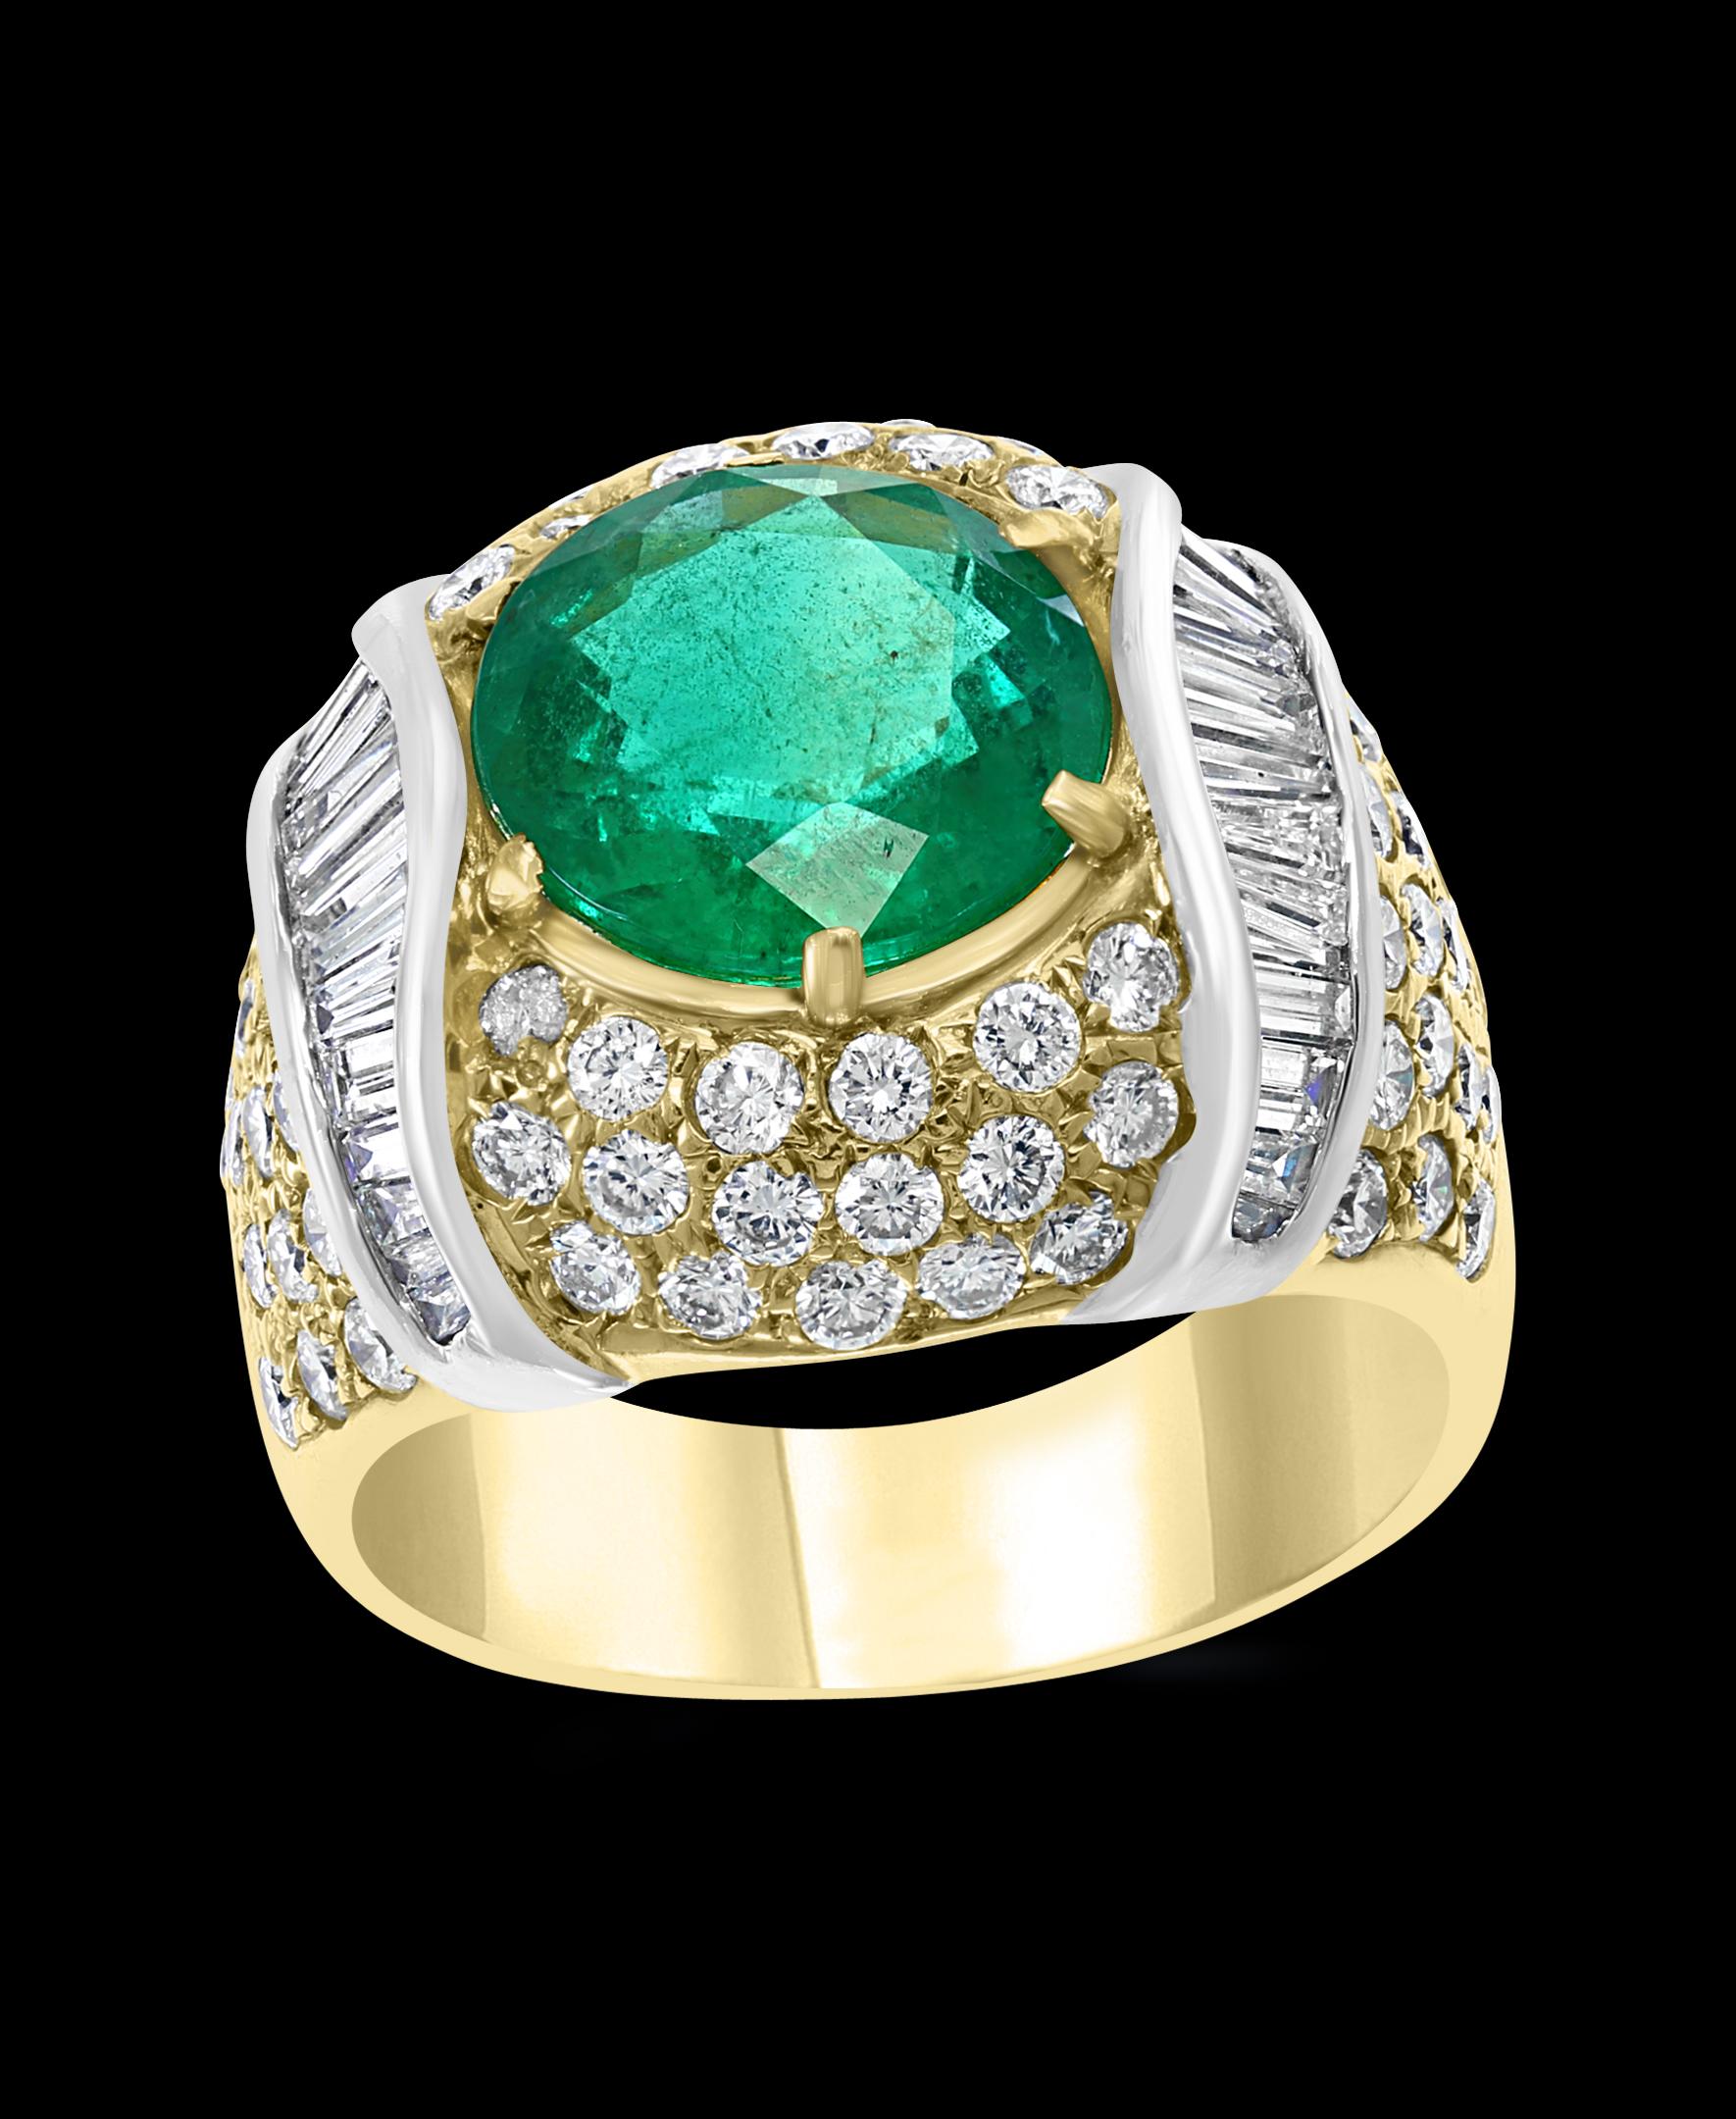 Ein klassischer Cocktail-Ring 
Groß 7 Karat  Kolumbianischer Smaragd- und Diamantring,  ohne Farbverbesserung.
18 K Gold 20 gm
 Diamanten: ca. 4,2 Karat, rund und Baguette
Baguette-Diamanten sind in 18 K Weißgold gefasst 
Gestempelt 750 
Ring Größe